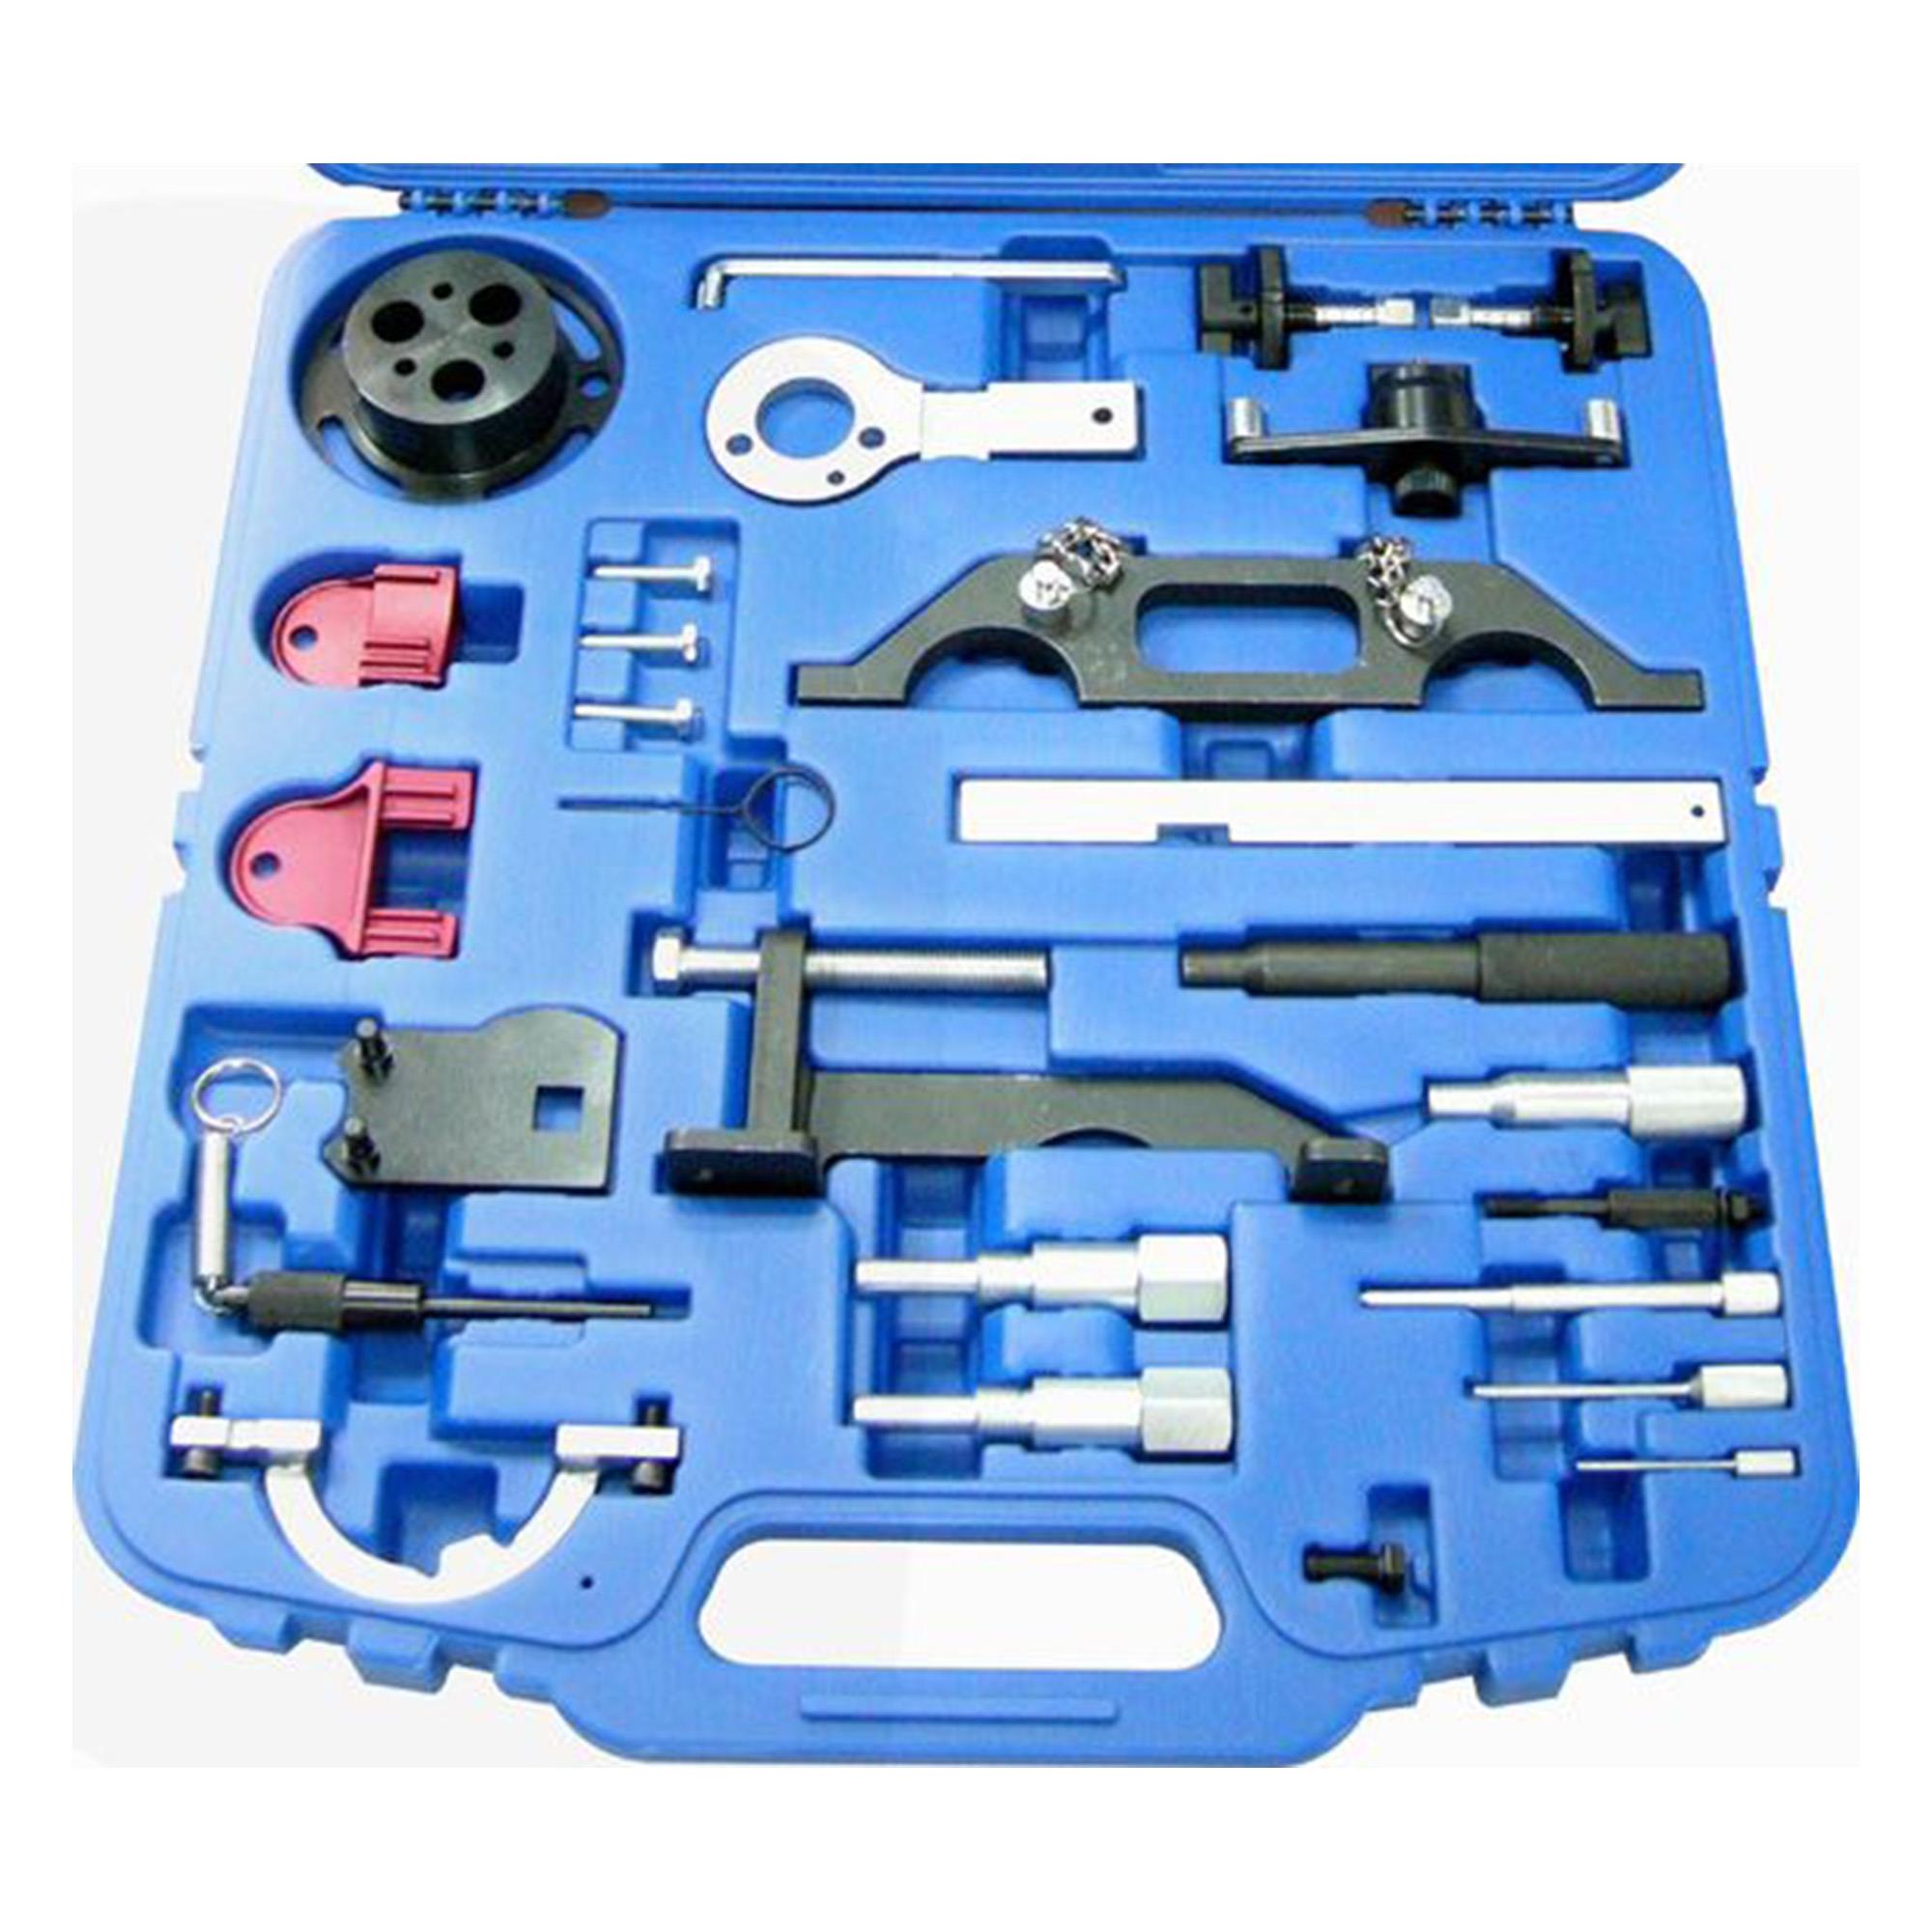 Motor Einstellwerkzeug-Satz für Opel - Leihwerkzeug, Verleih-Werkzeuge, Spezialwerkzeug